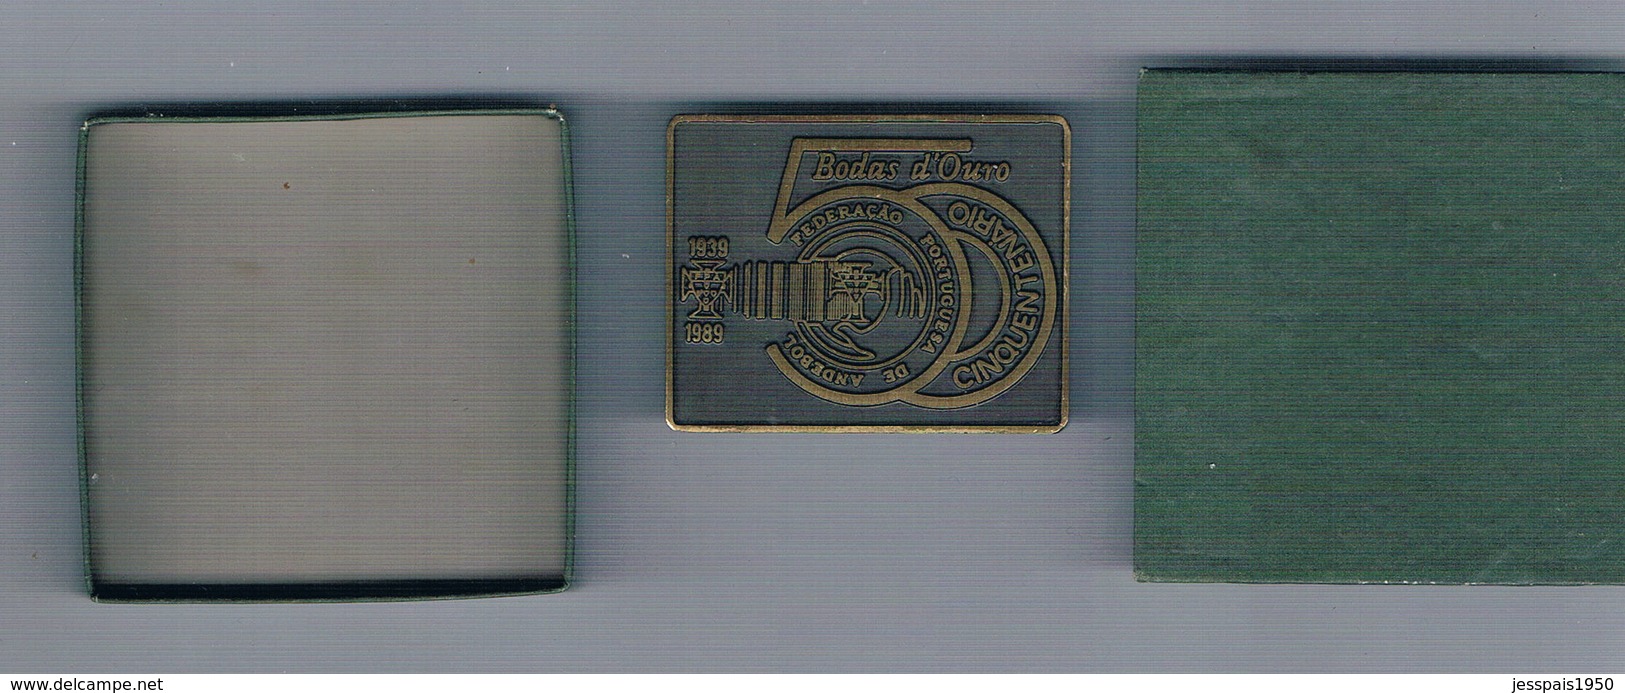 Medaille - Bodas D'ouro 1939/1989 - Cinquentenério Da Federação Portuguesa De Handeball - Palla A Mano